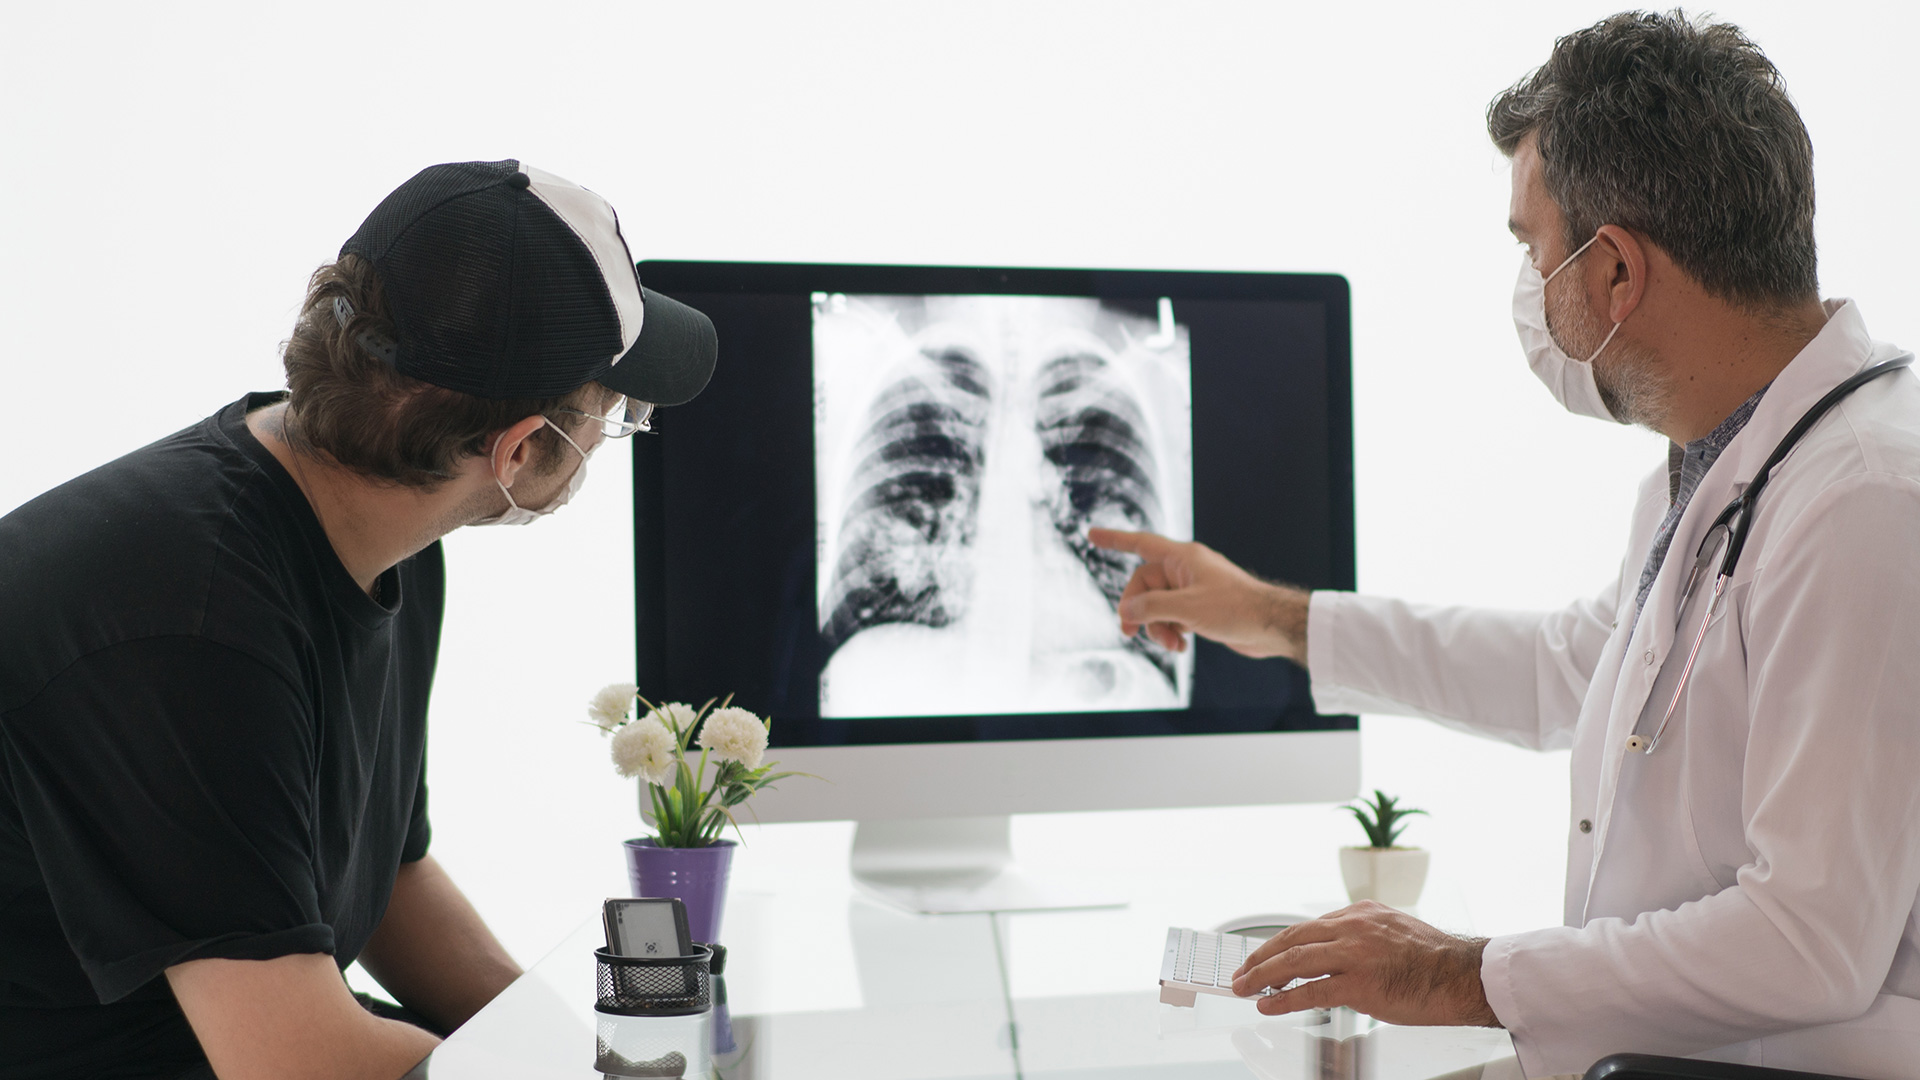 La radiografía de tórax puede dar pistas sobre posibles afecciones pulmonares, especialmente en las personas que son o han sido fumadoras